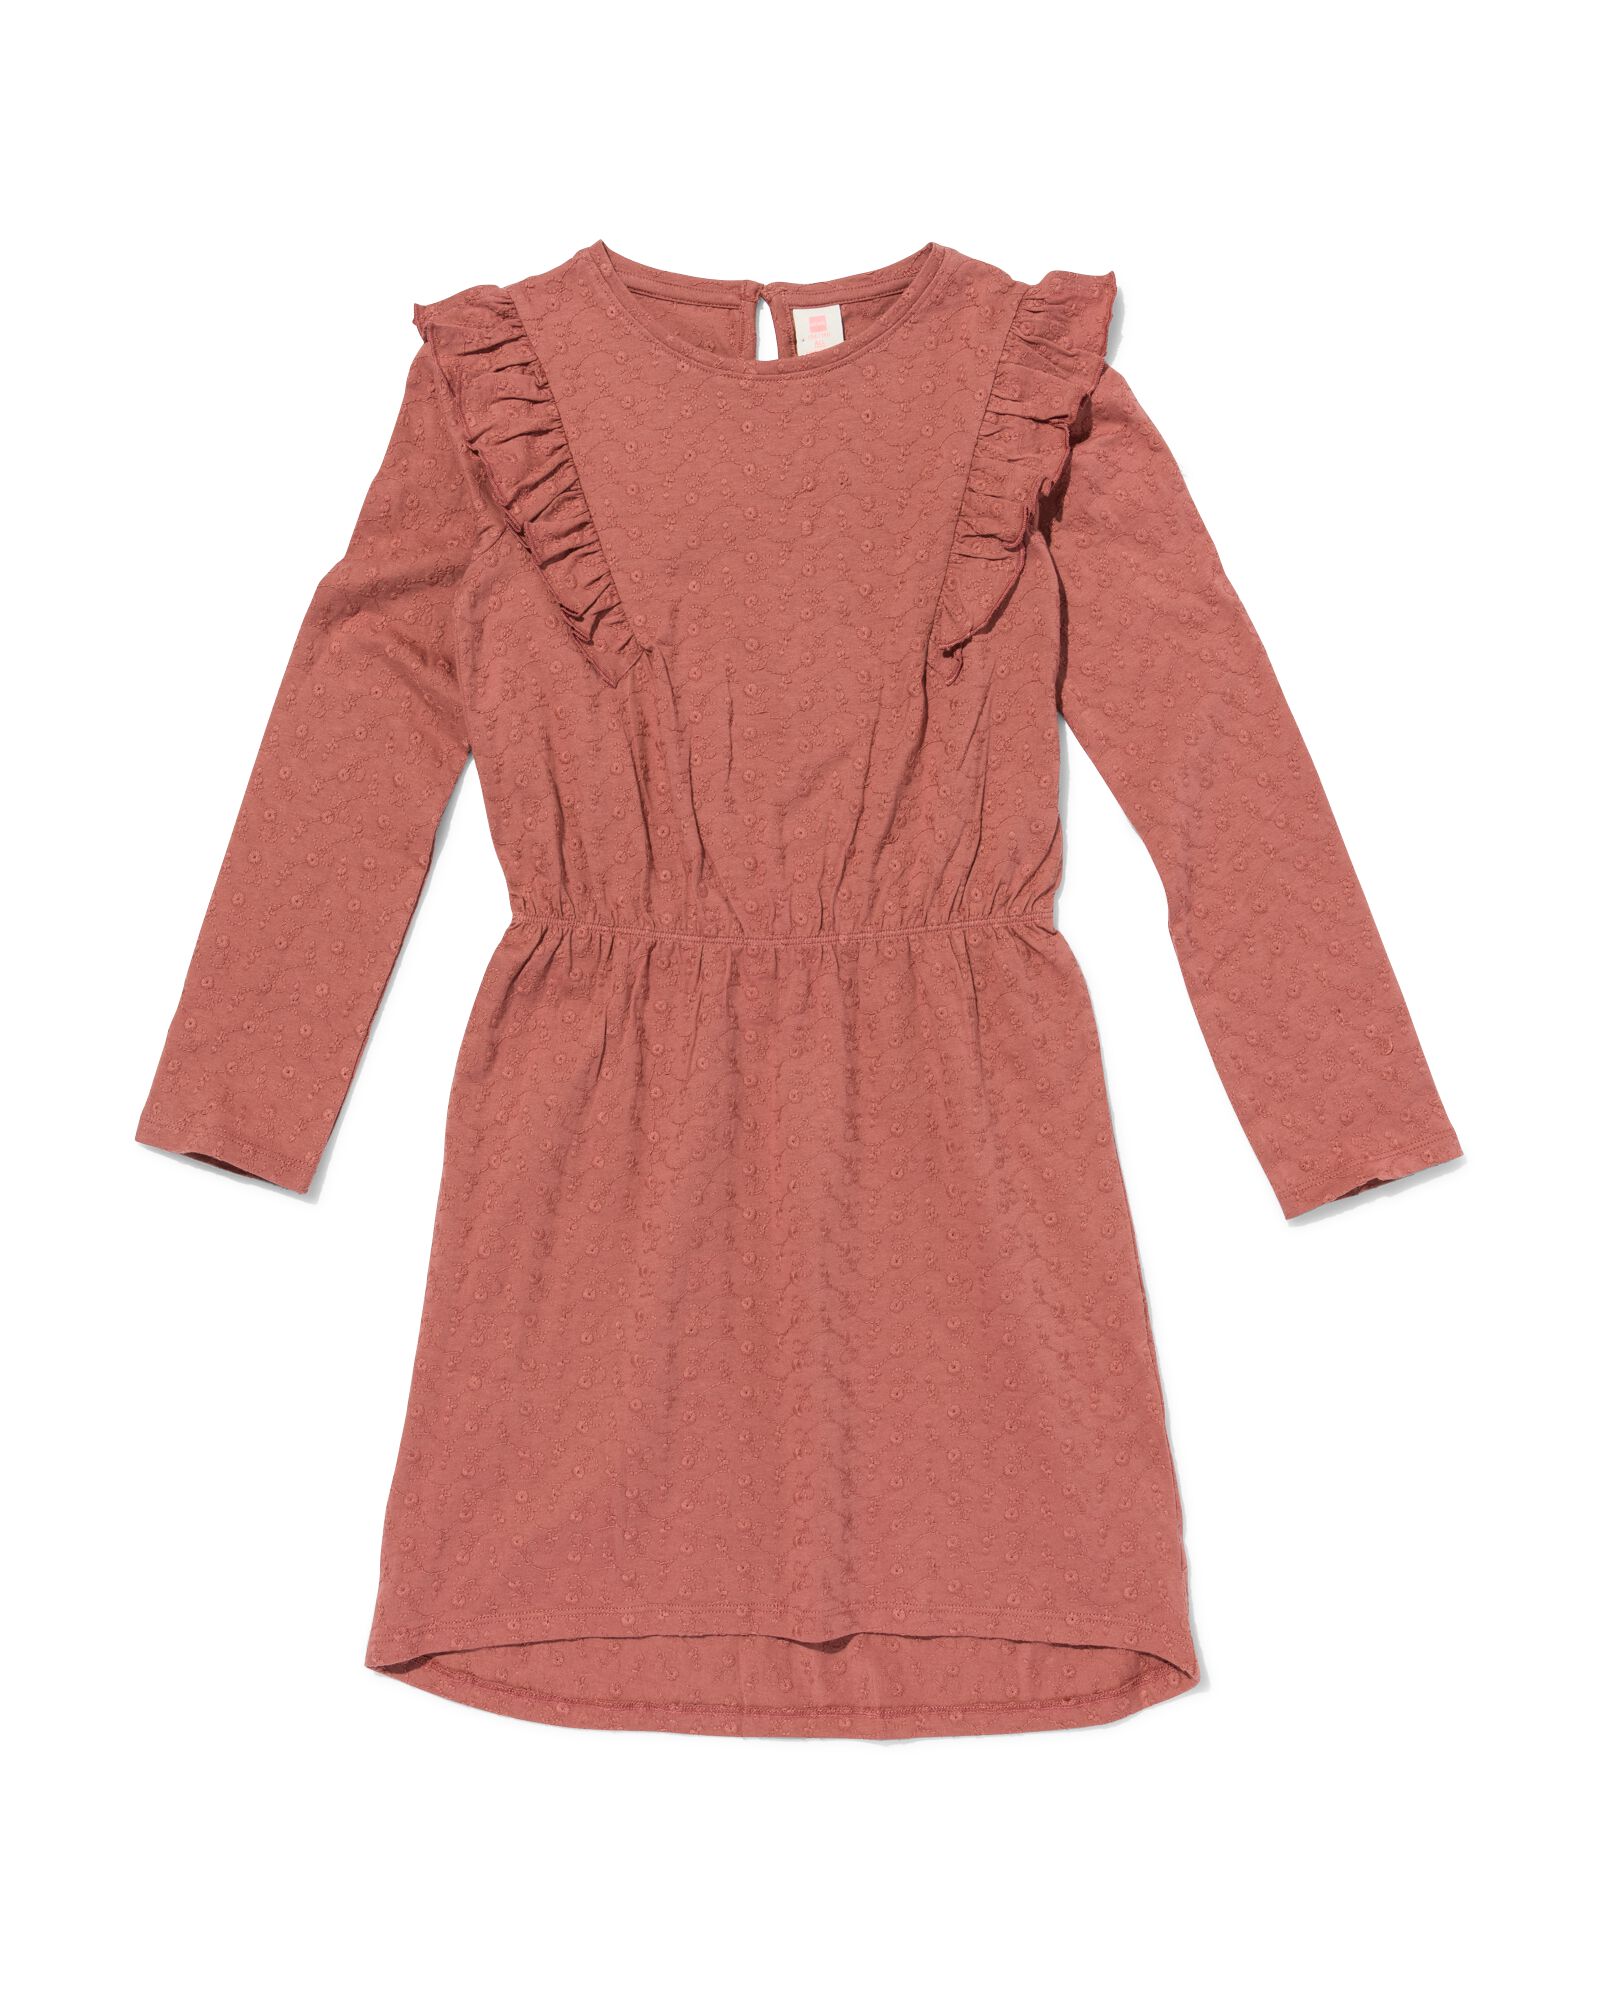 robe enfant avec broderie roze 110/116 - 30872644 - HEMA